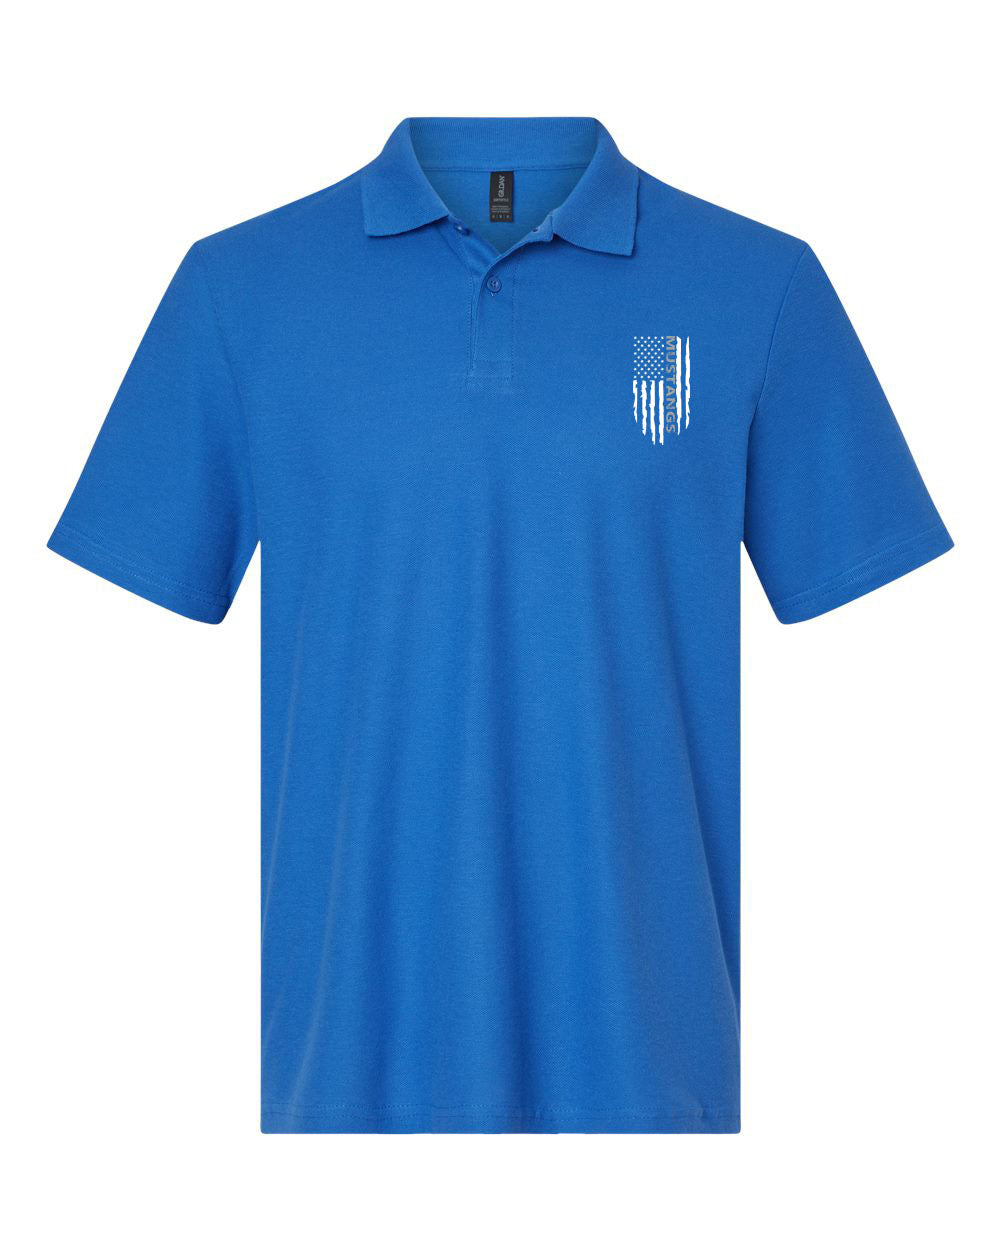 Frelinghuysen Design 11 Polo T-Shirt